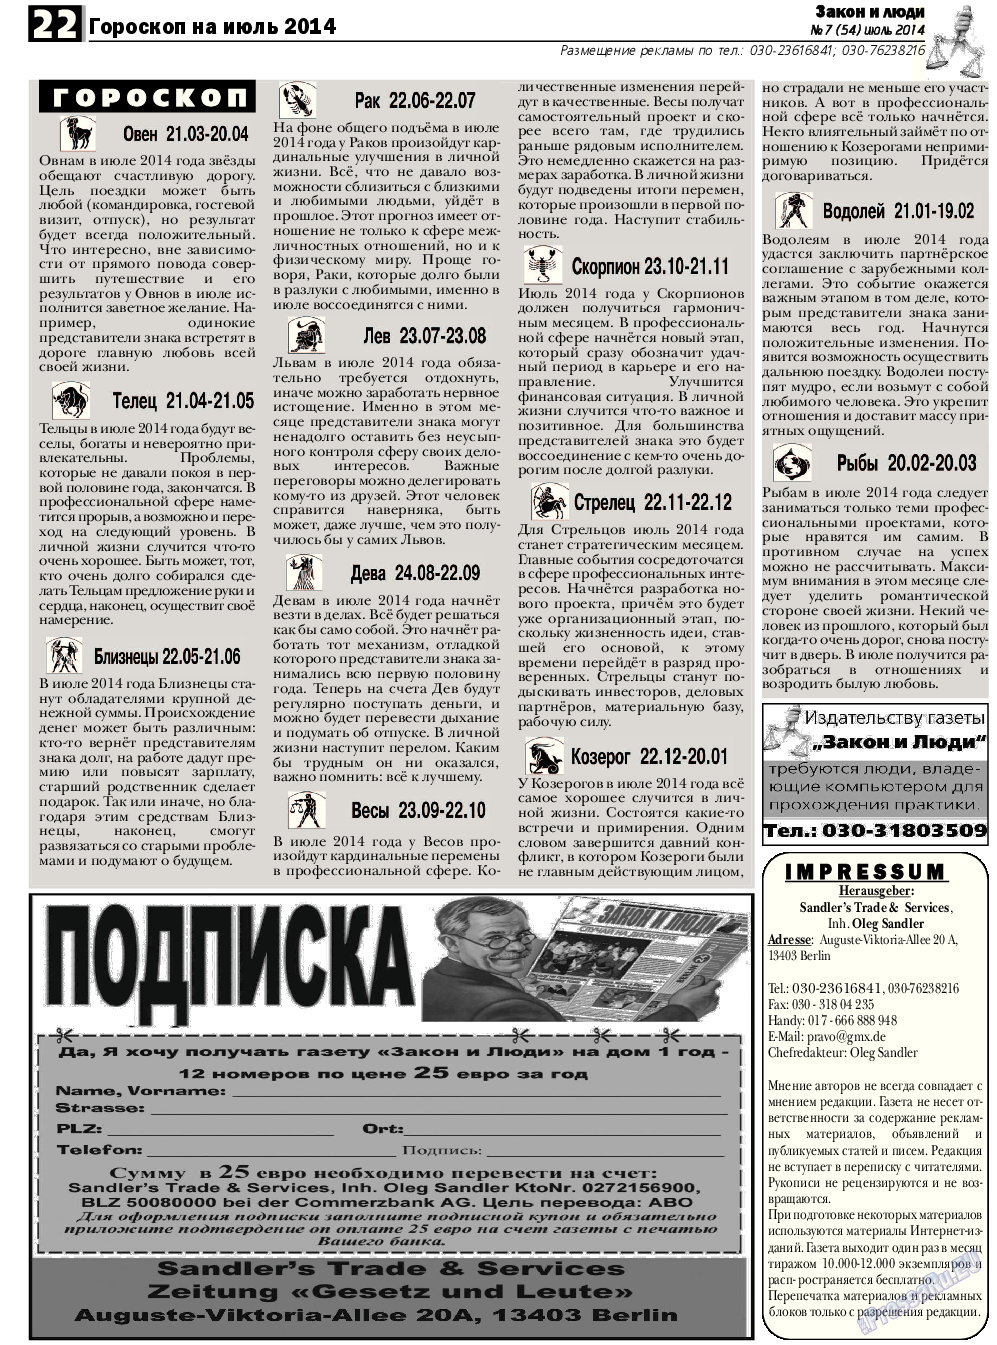 Закон и люди, газета. 2014 №7 стр.22